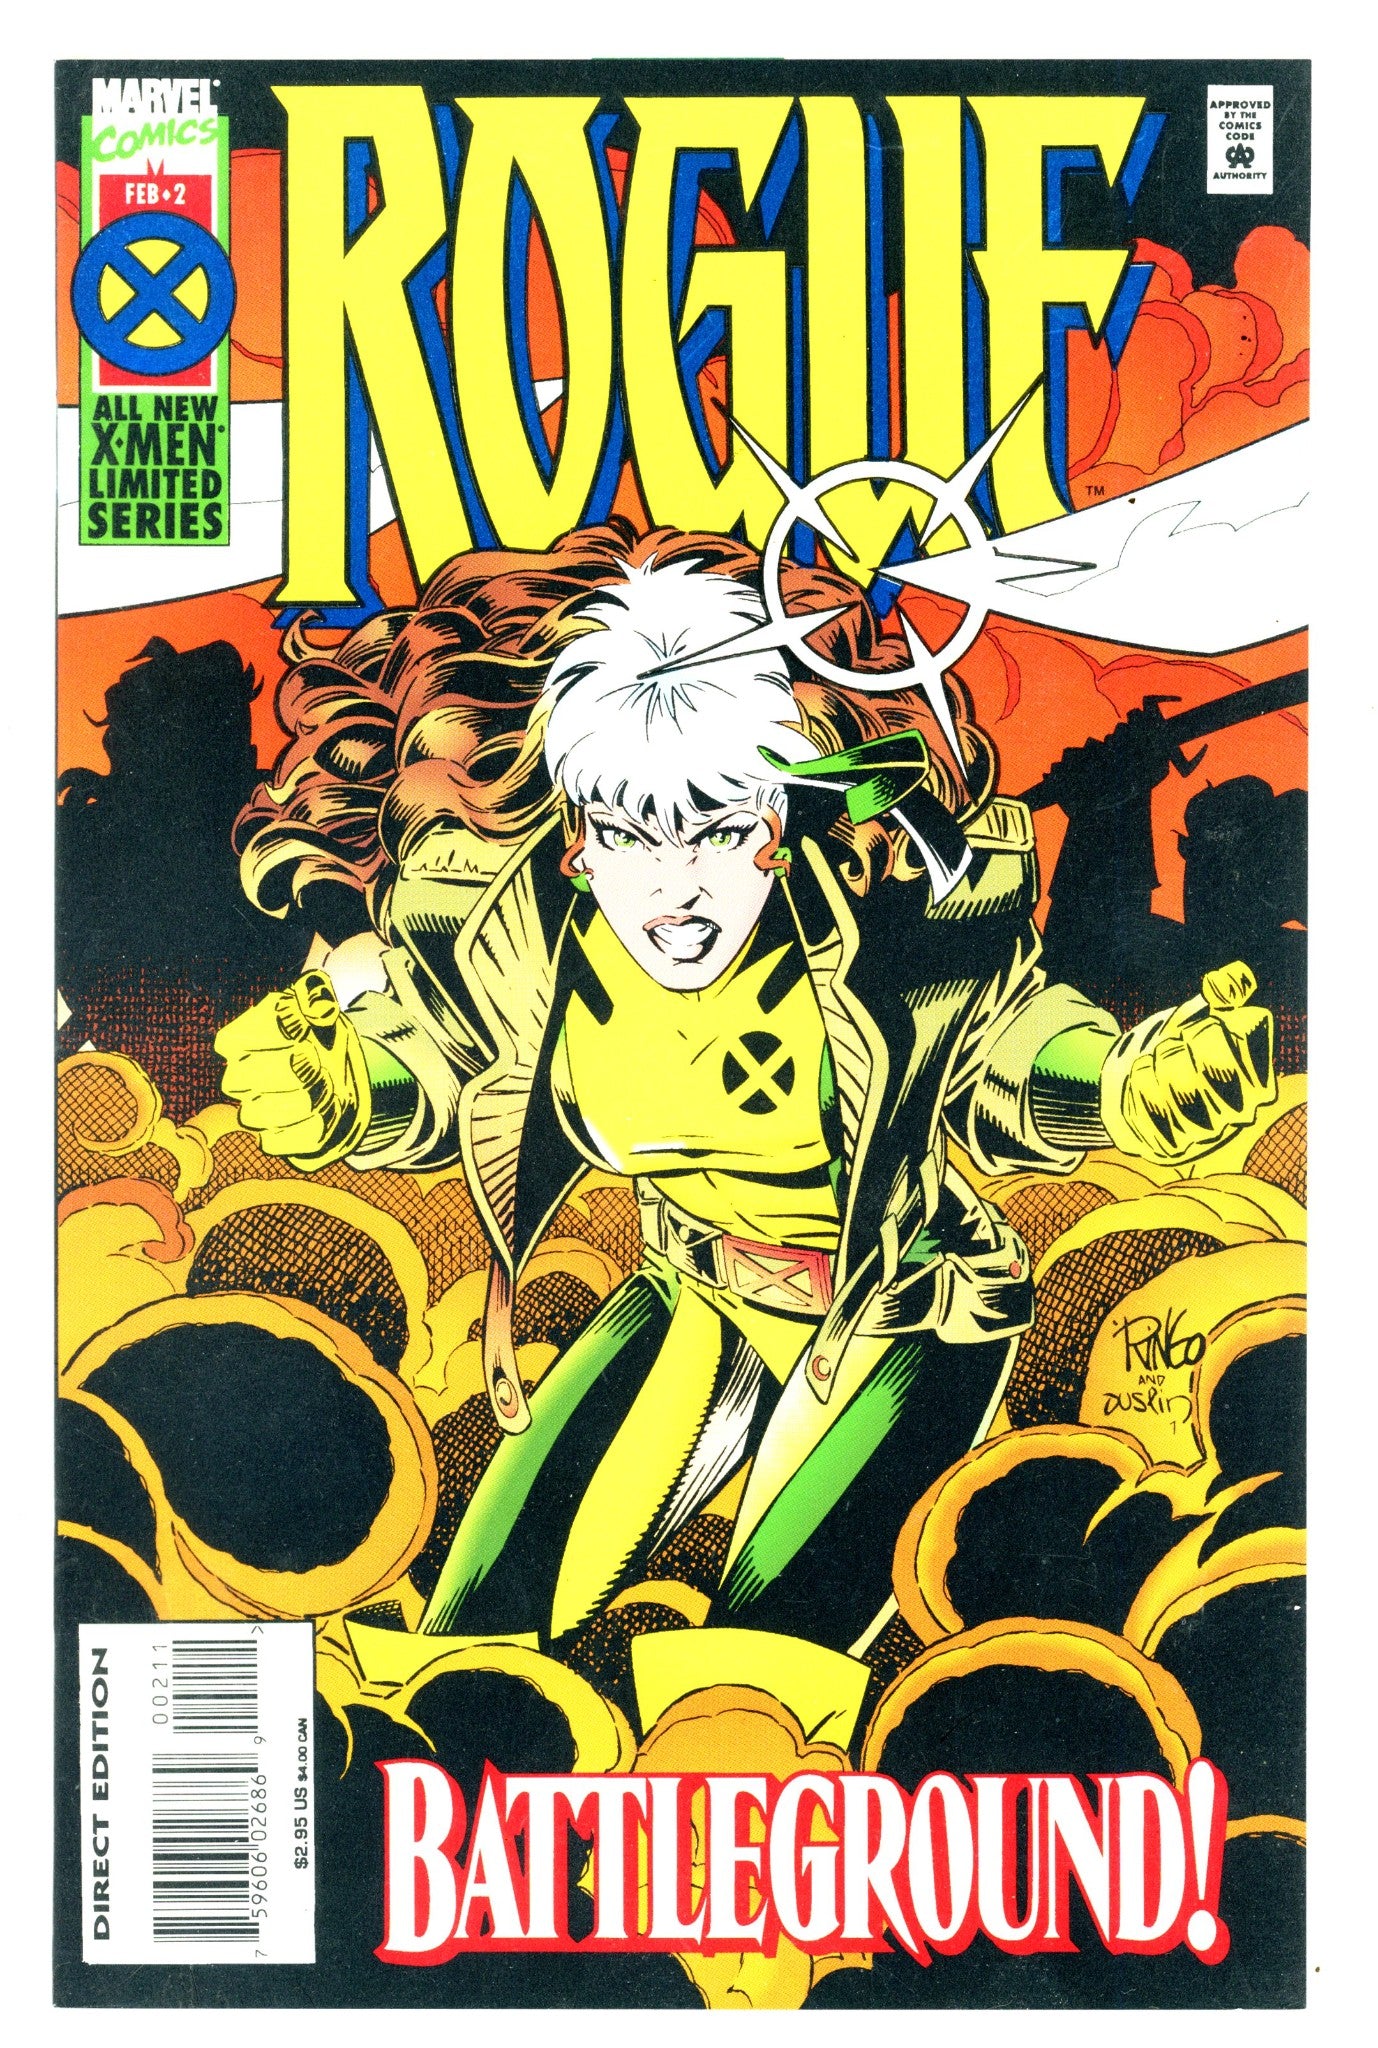 Rogue Vol 1 2 High Grade (1995) 